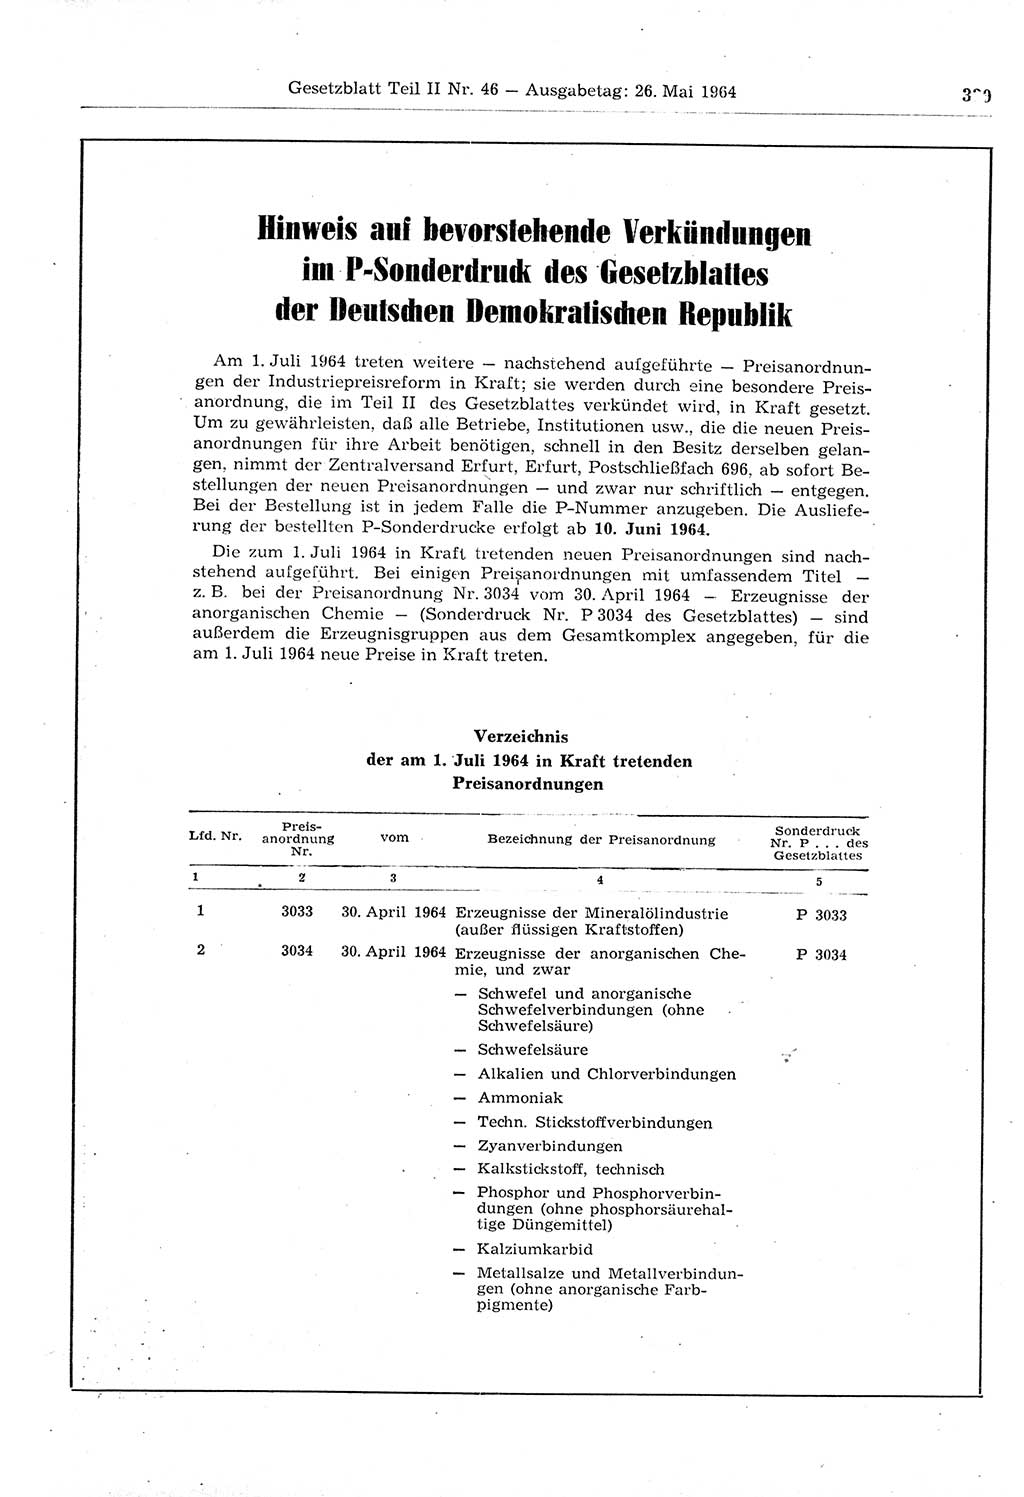 Gesetzblatt (GBl.) der Deutschen Demokratischen Republik (DDR) Teil ⅠⅠ 1964, Seite 339 (GBl. DDR ⅠⅠ 1964, S. 339)